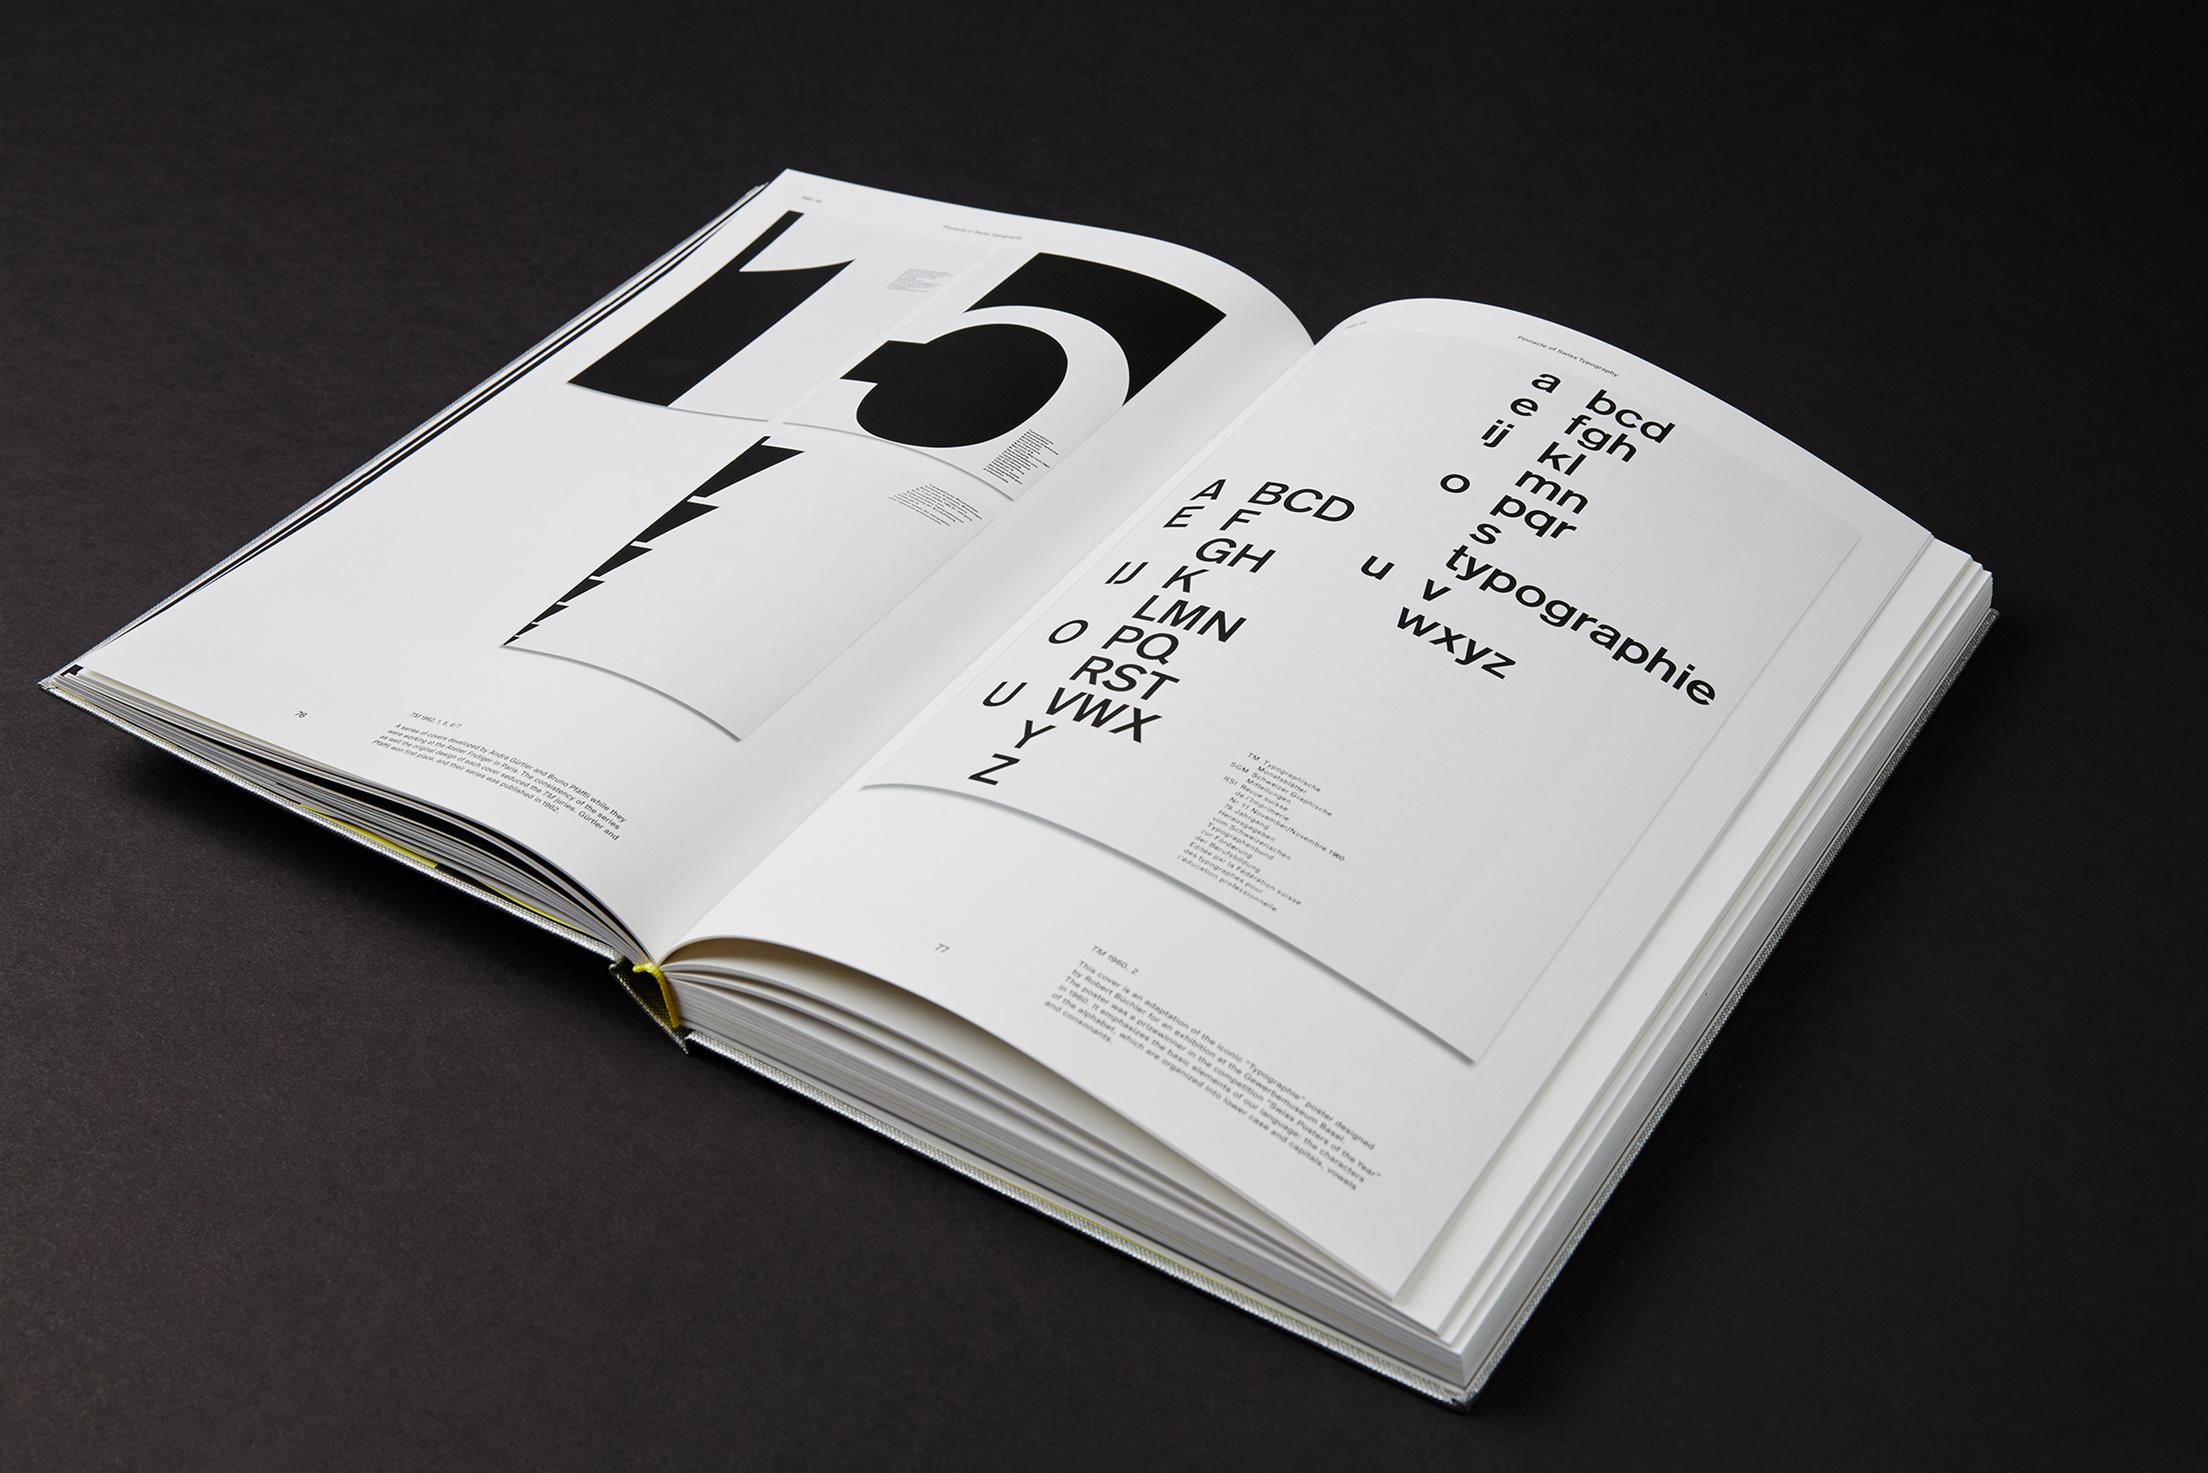 瑞士雜誌、「好的形式」、書籍和海報比賽 | 瑞士字體排印風格三十年-捷可印